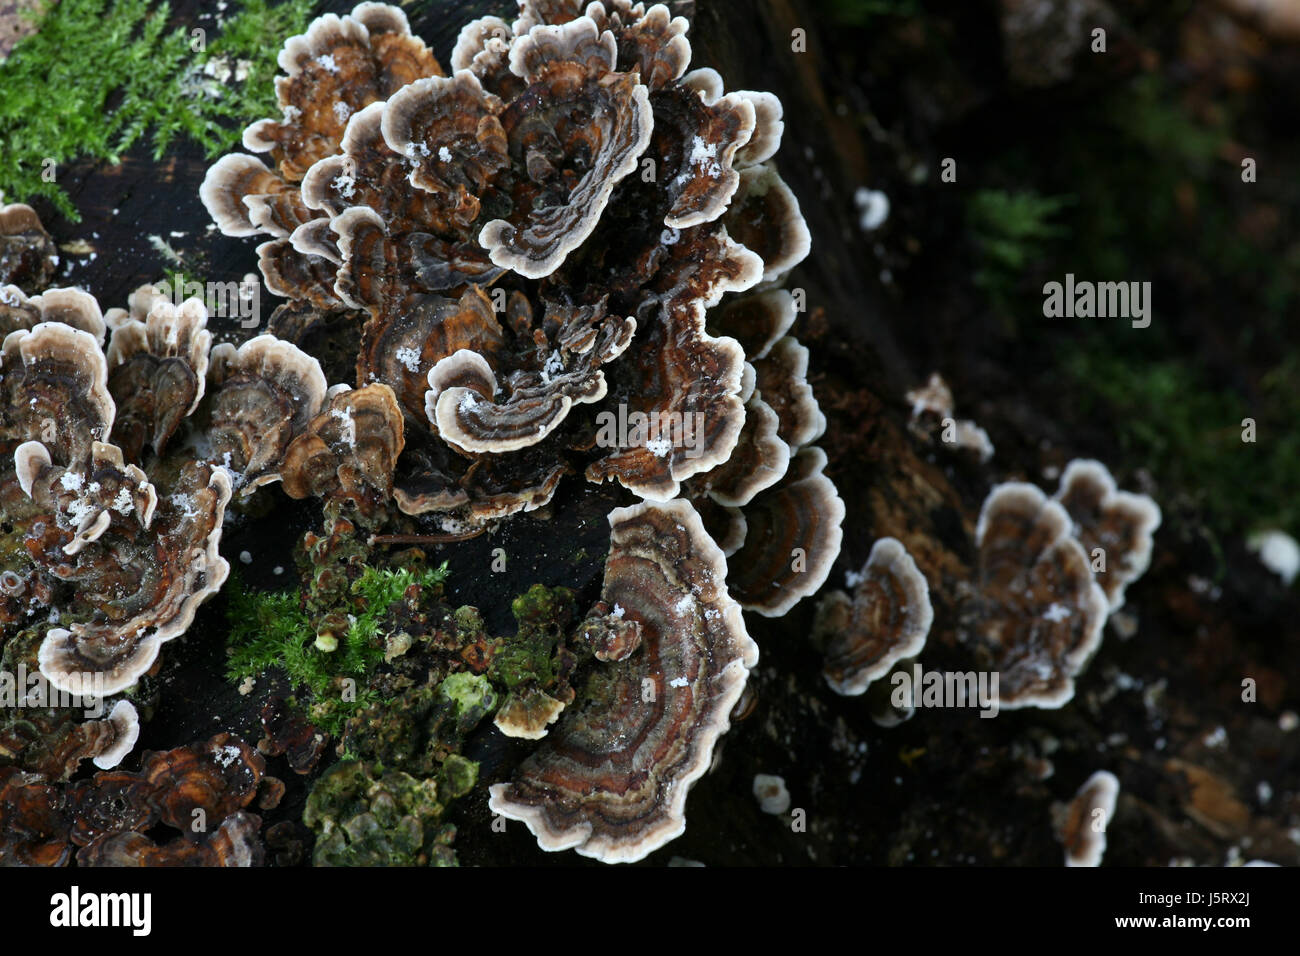 Tree trunk verde della flora contrasto frost moss funghi fungo fungo forest Foto Stock